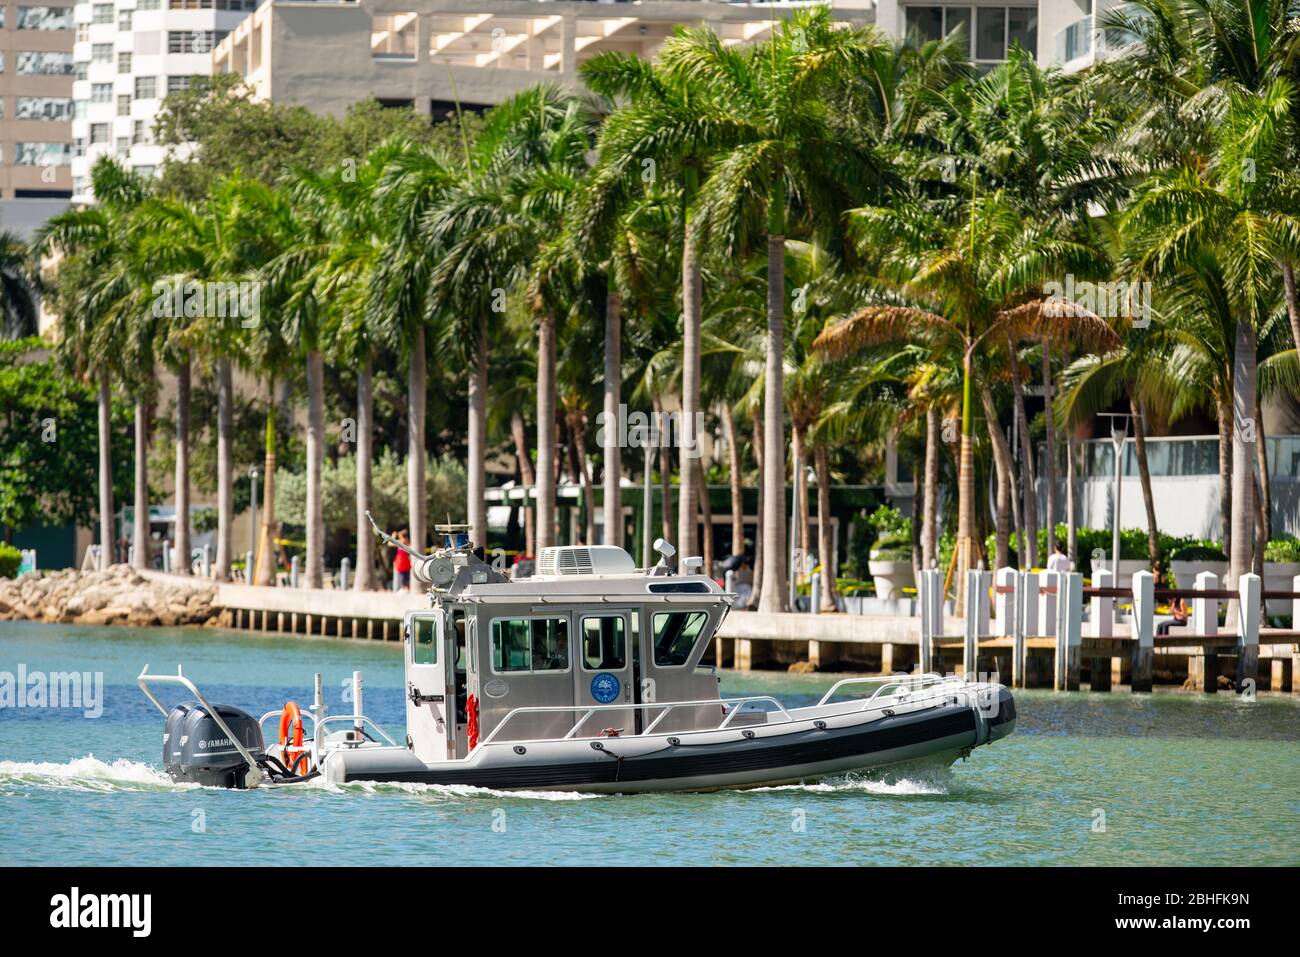 City of Miami police boat in river Stock Photo